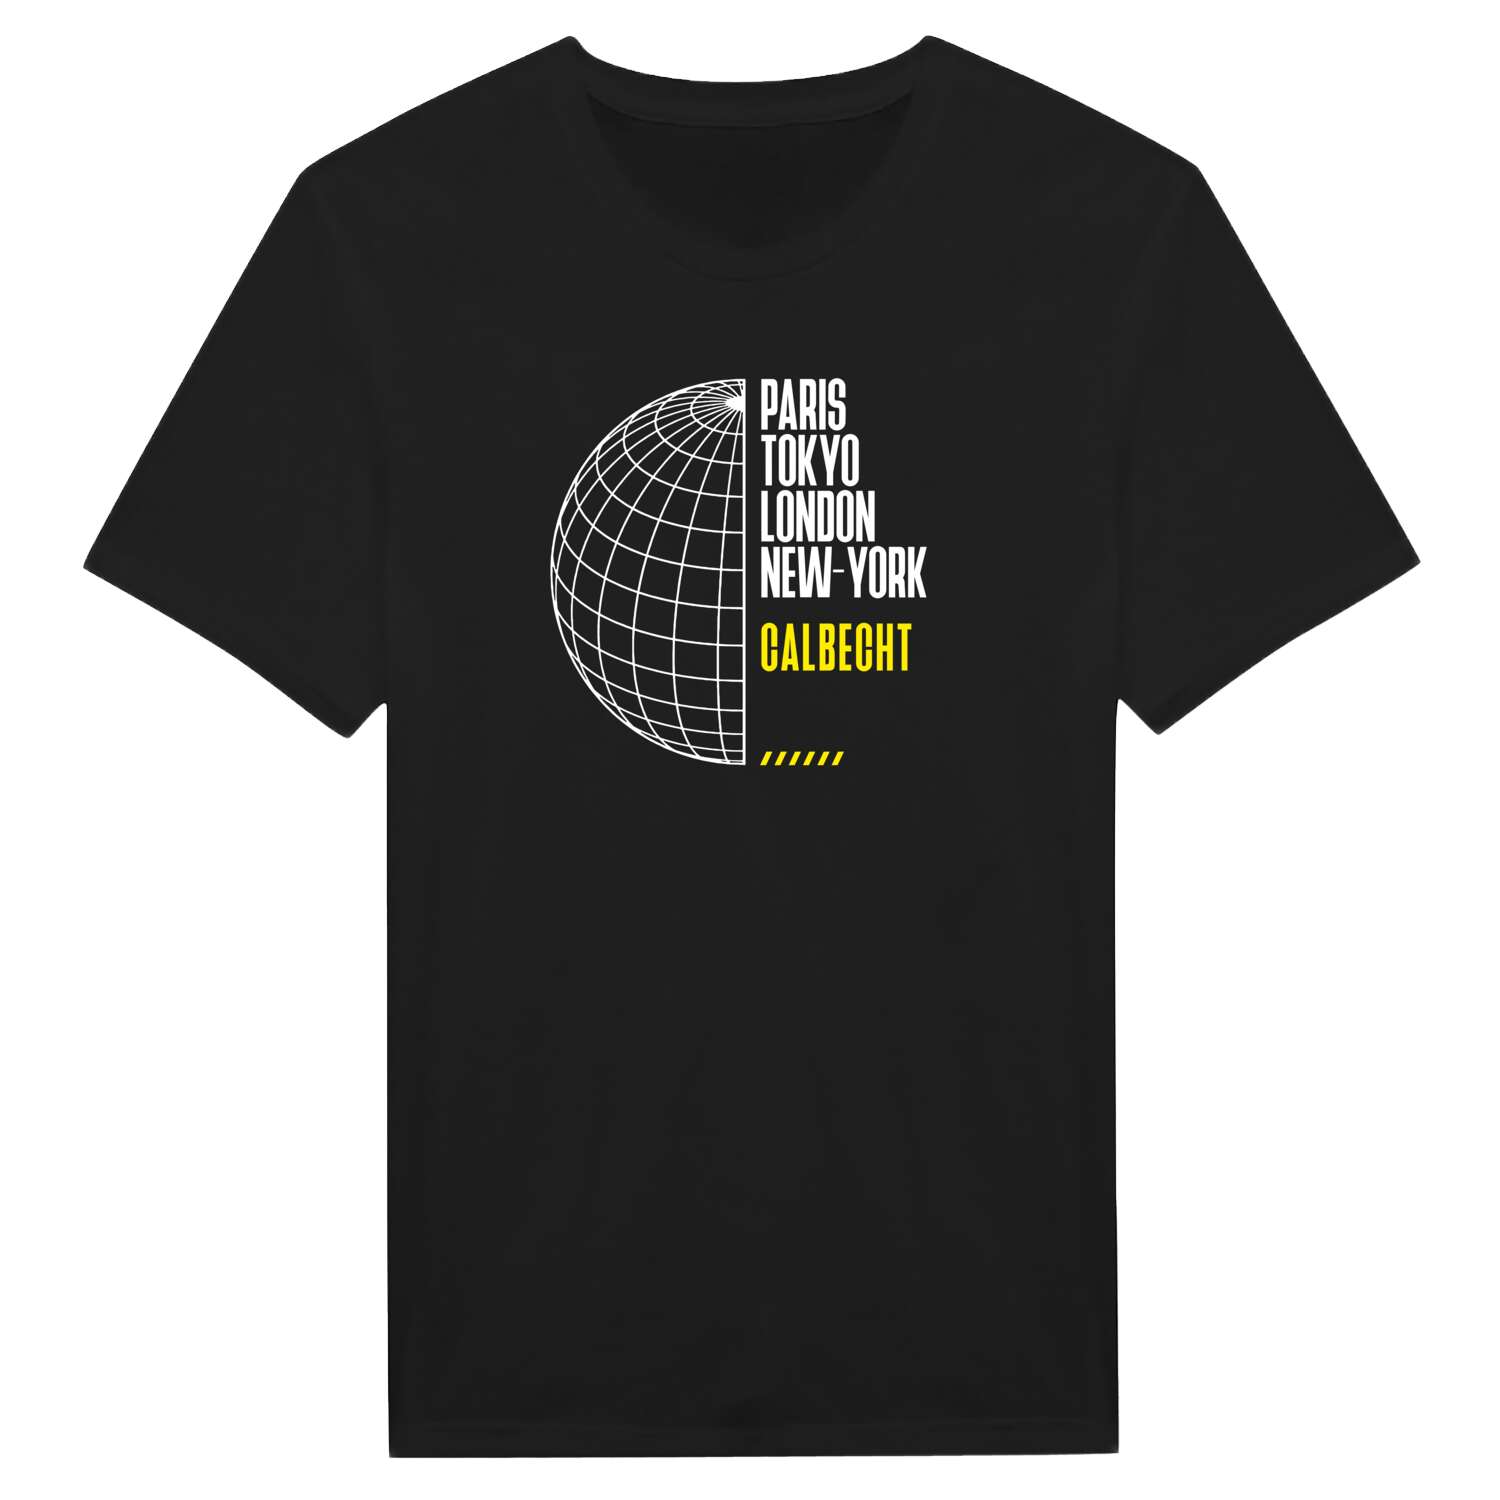 Calbecht T-Shirt »Paris Tokyo London«